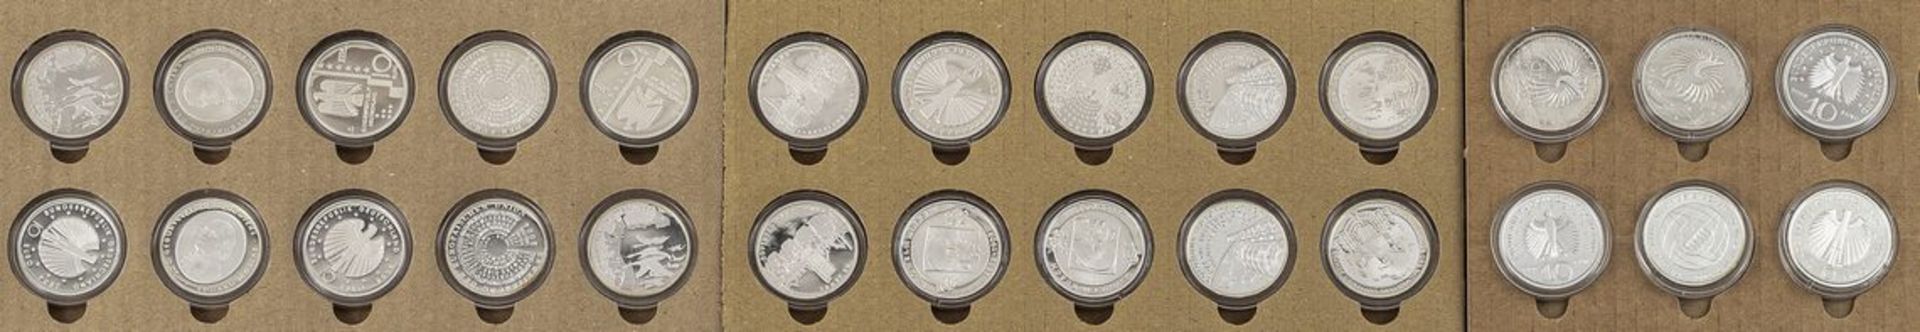 Bundesrepublik Deutschland26 x 10 Euro-Gedenkprägungen 2004/2006/2007. Si. 925, 468 g. Jeweils in